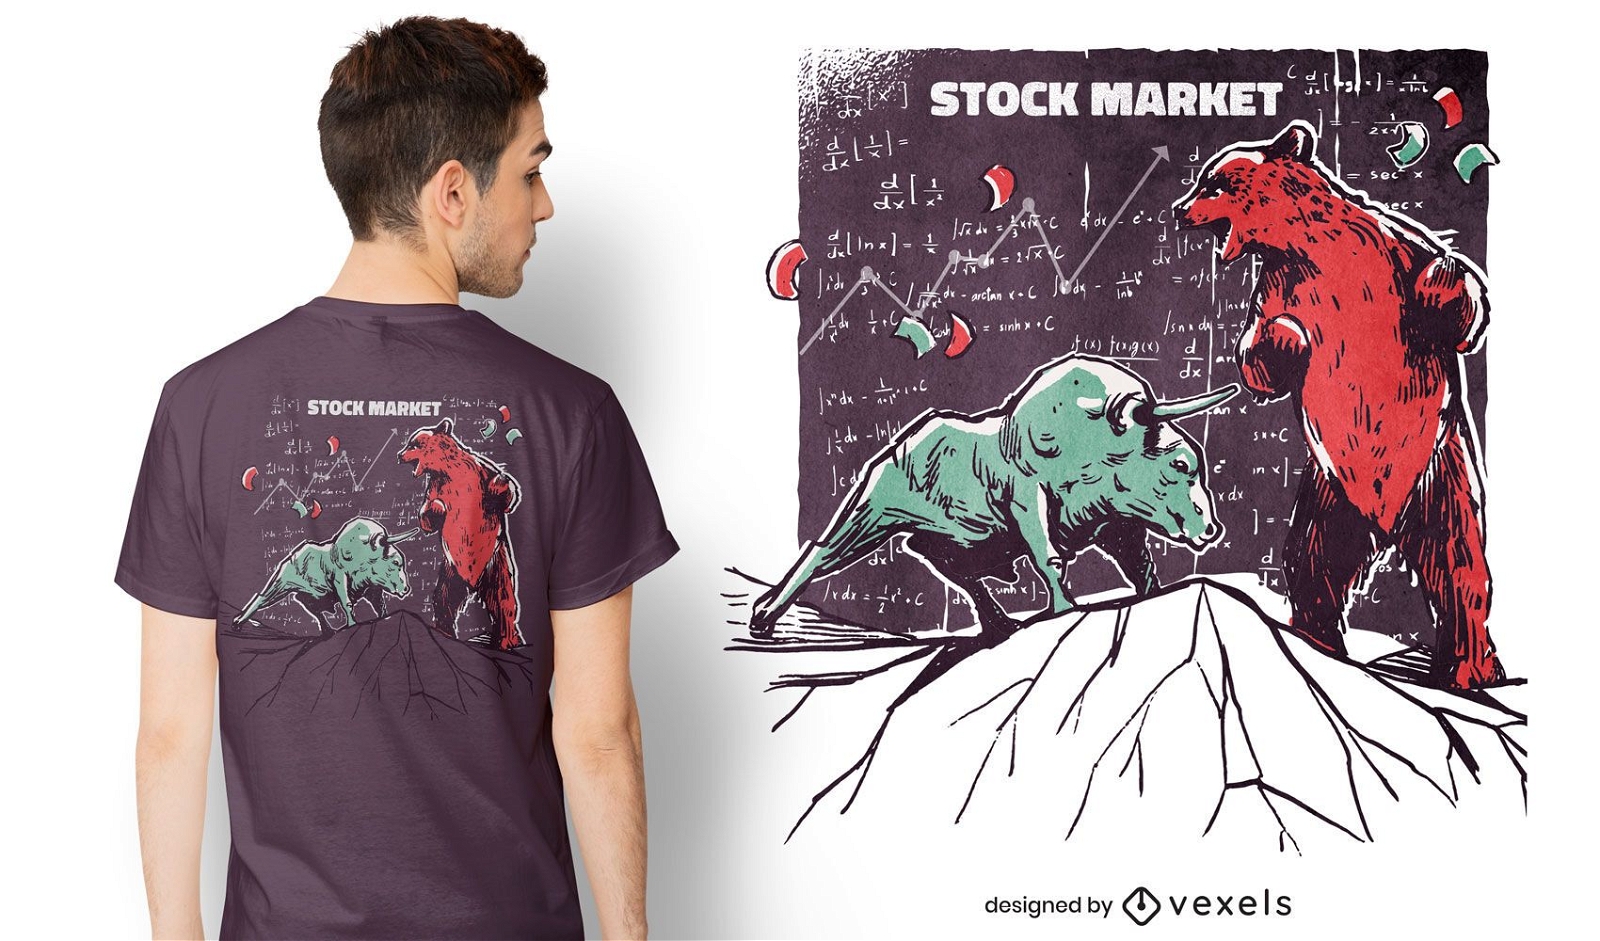 Dise?o de camiseta de mercado de valores de animales.